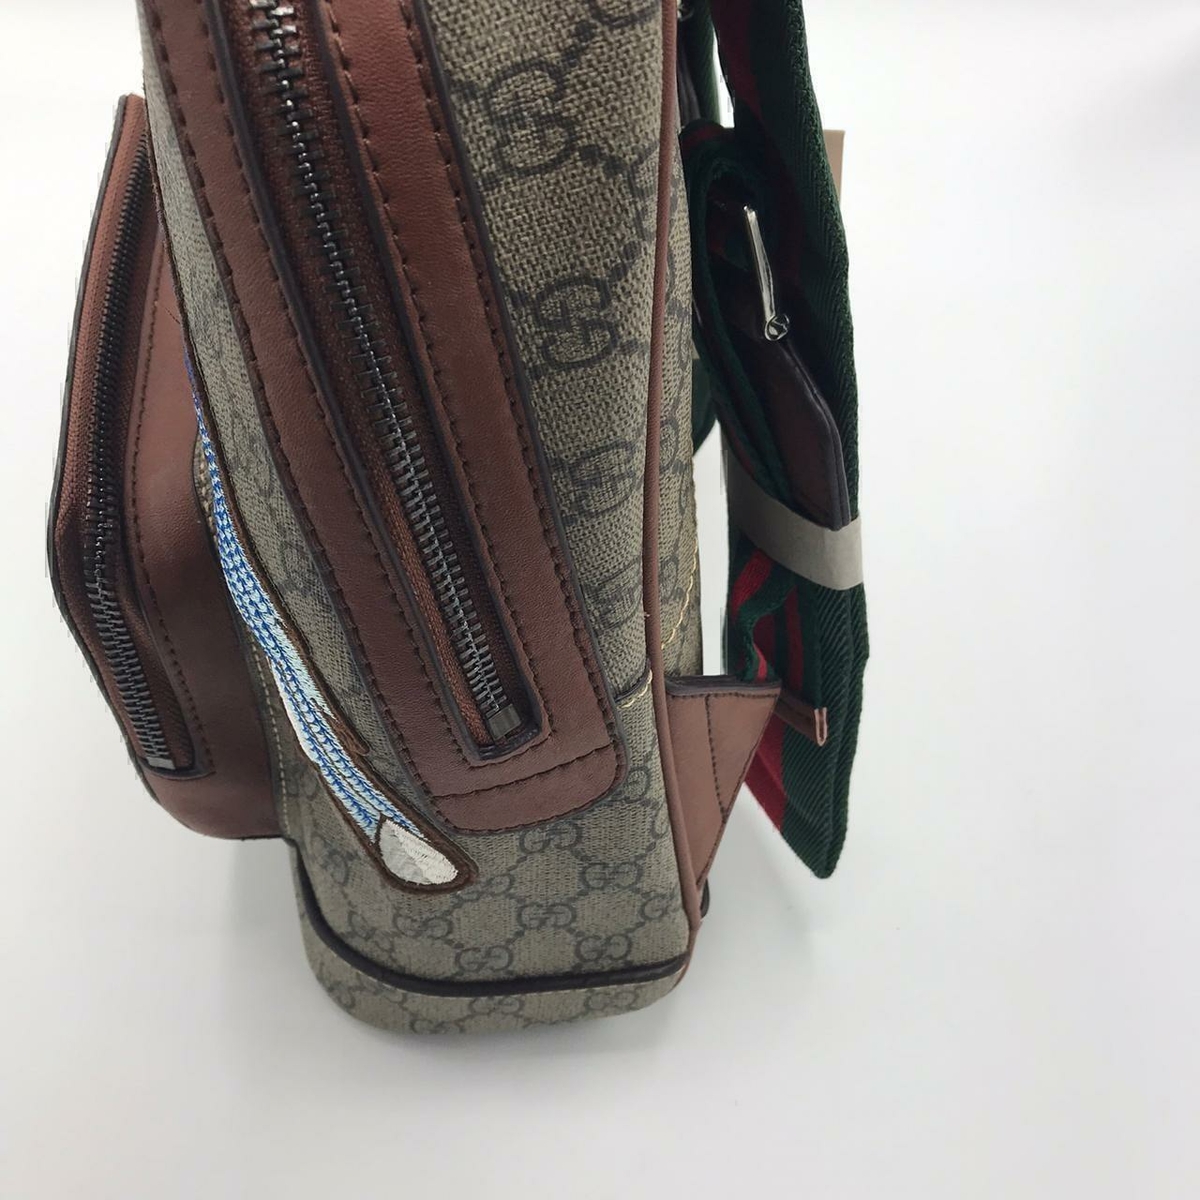 Gucci рюкзак #1 в «Globestyle» арт.7980IL